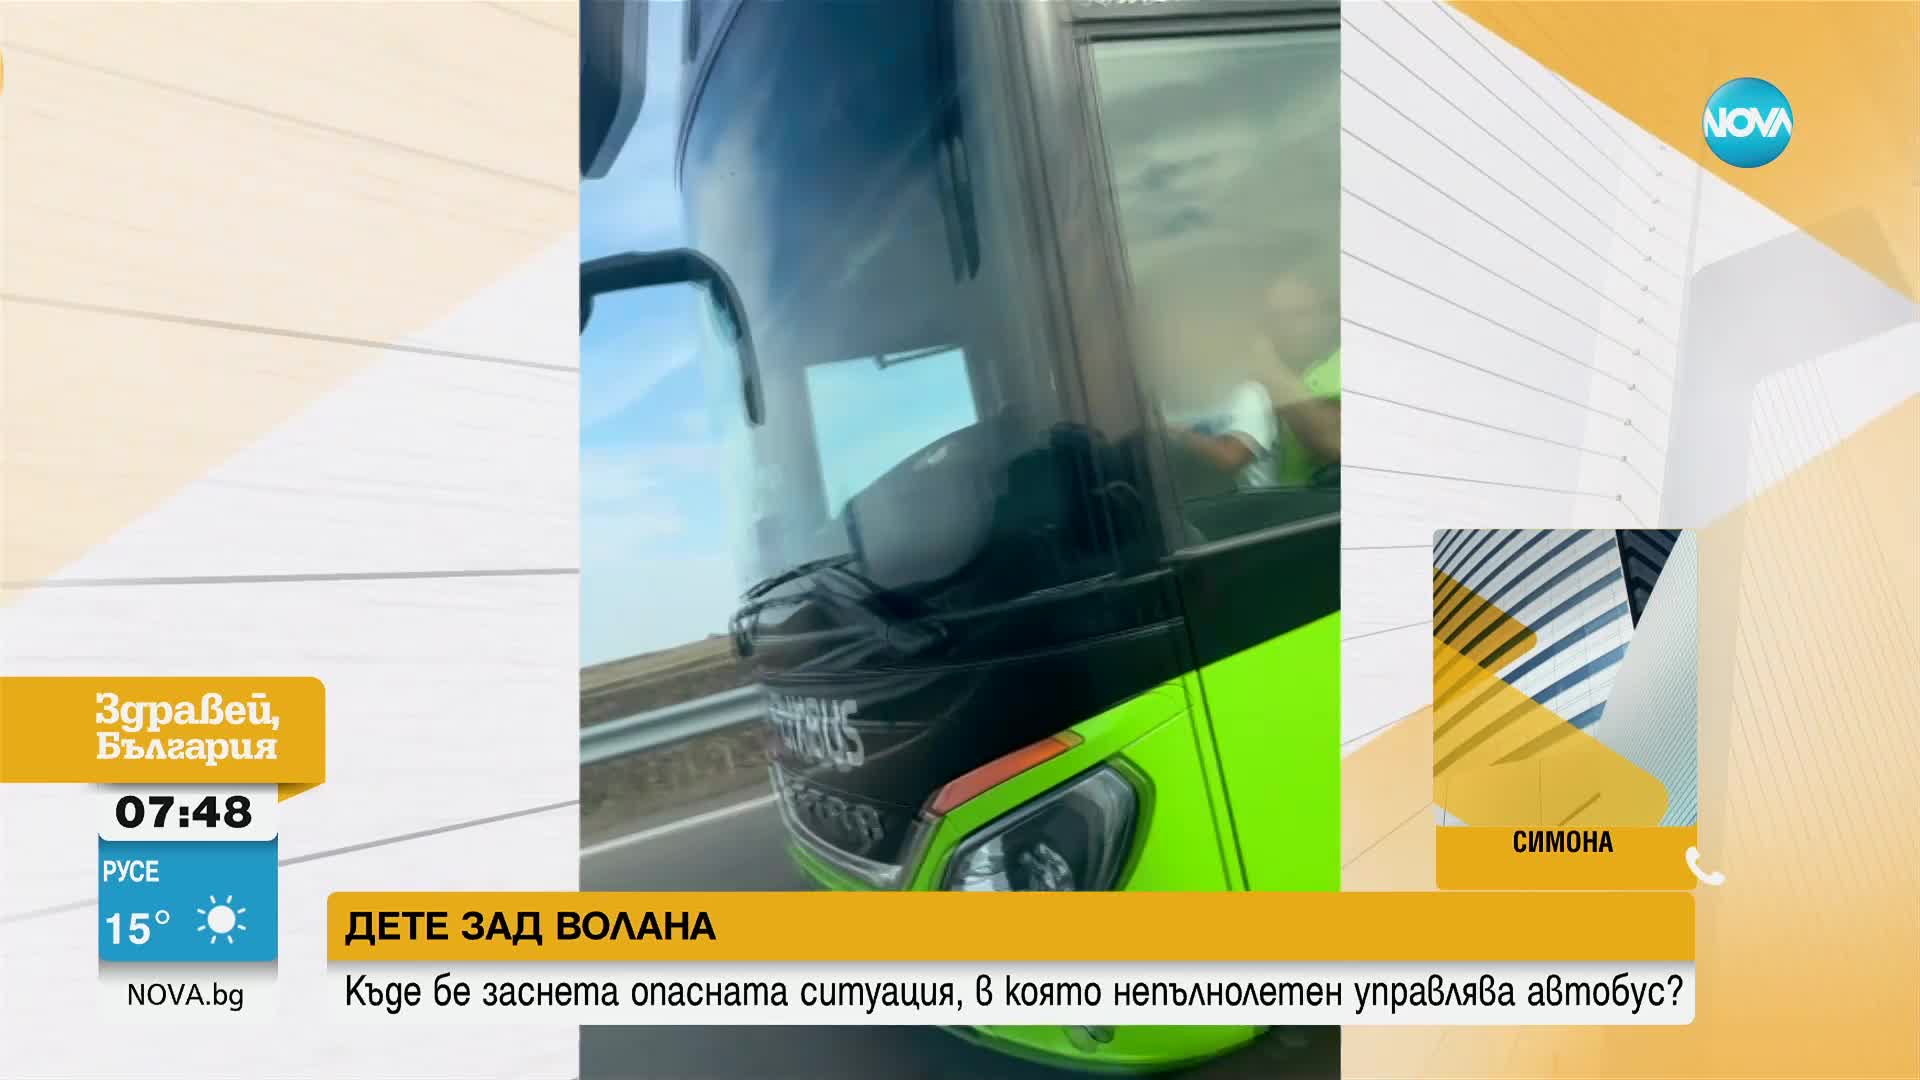 ДЕТЕ ЗАД ВОЛАНА: Момченце седи в шофьор на автобус, пълен с пътници